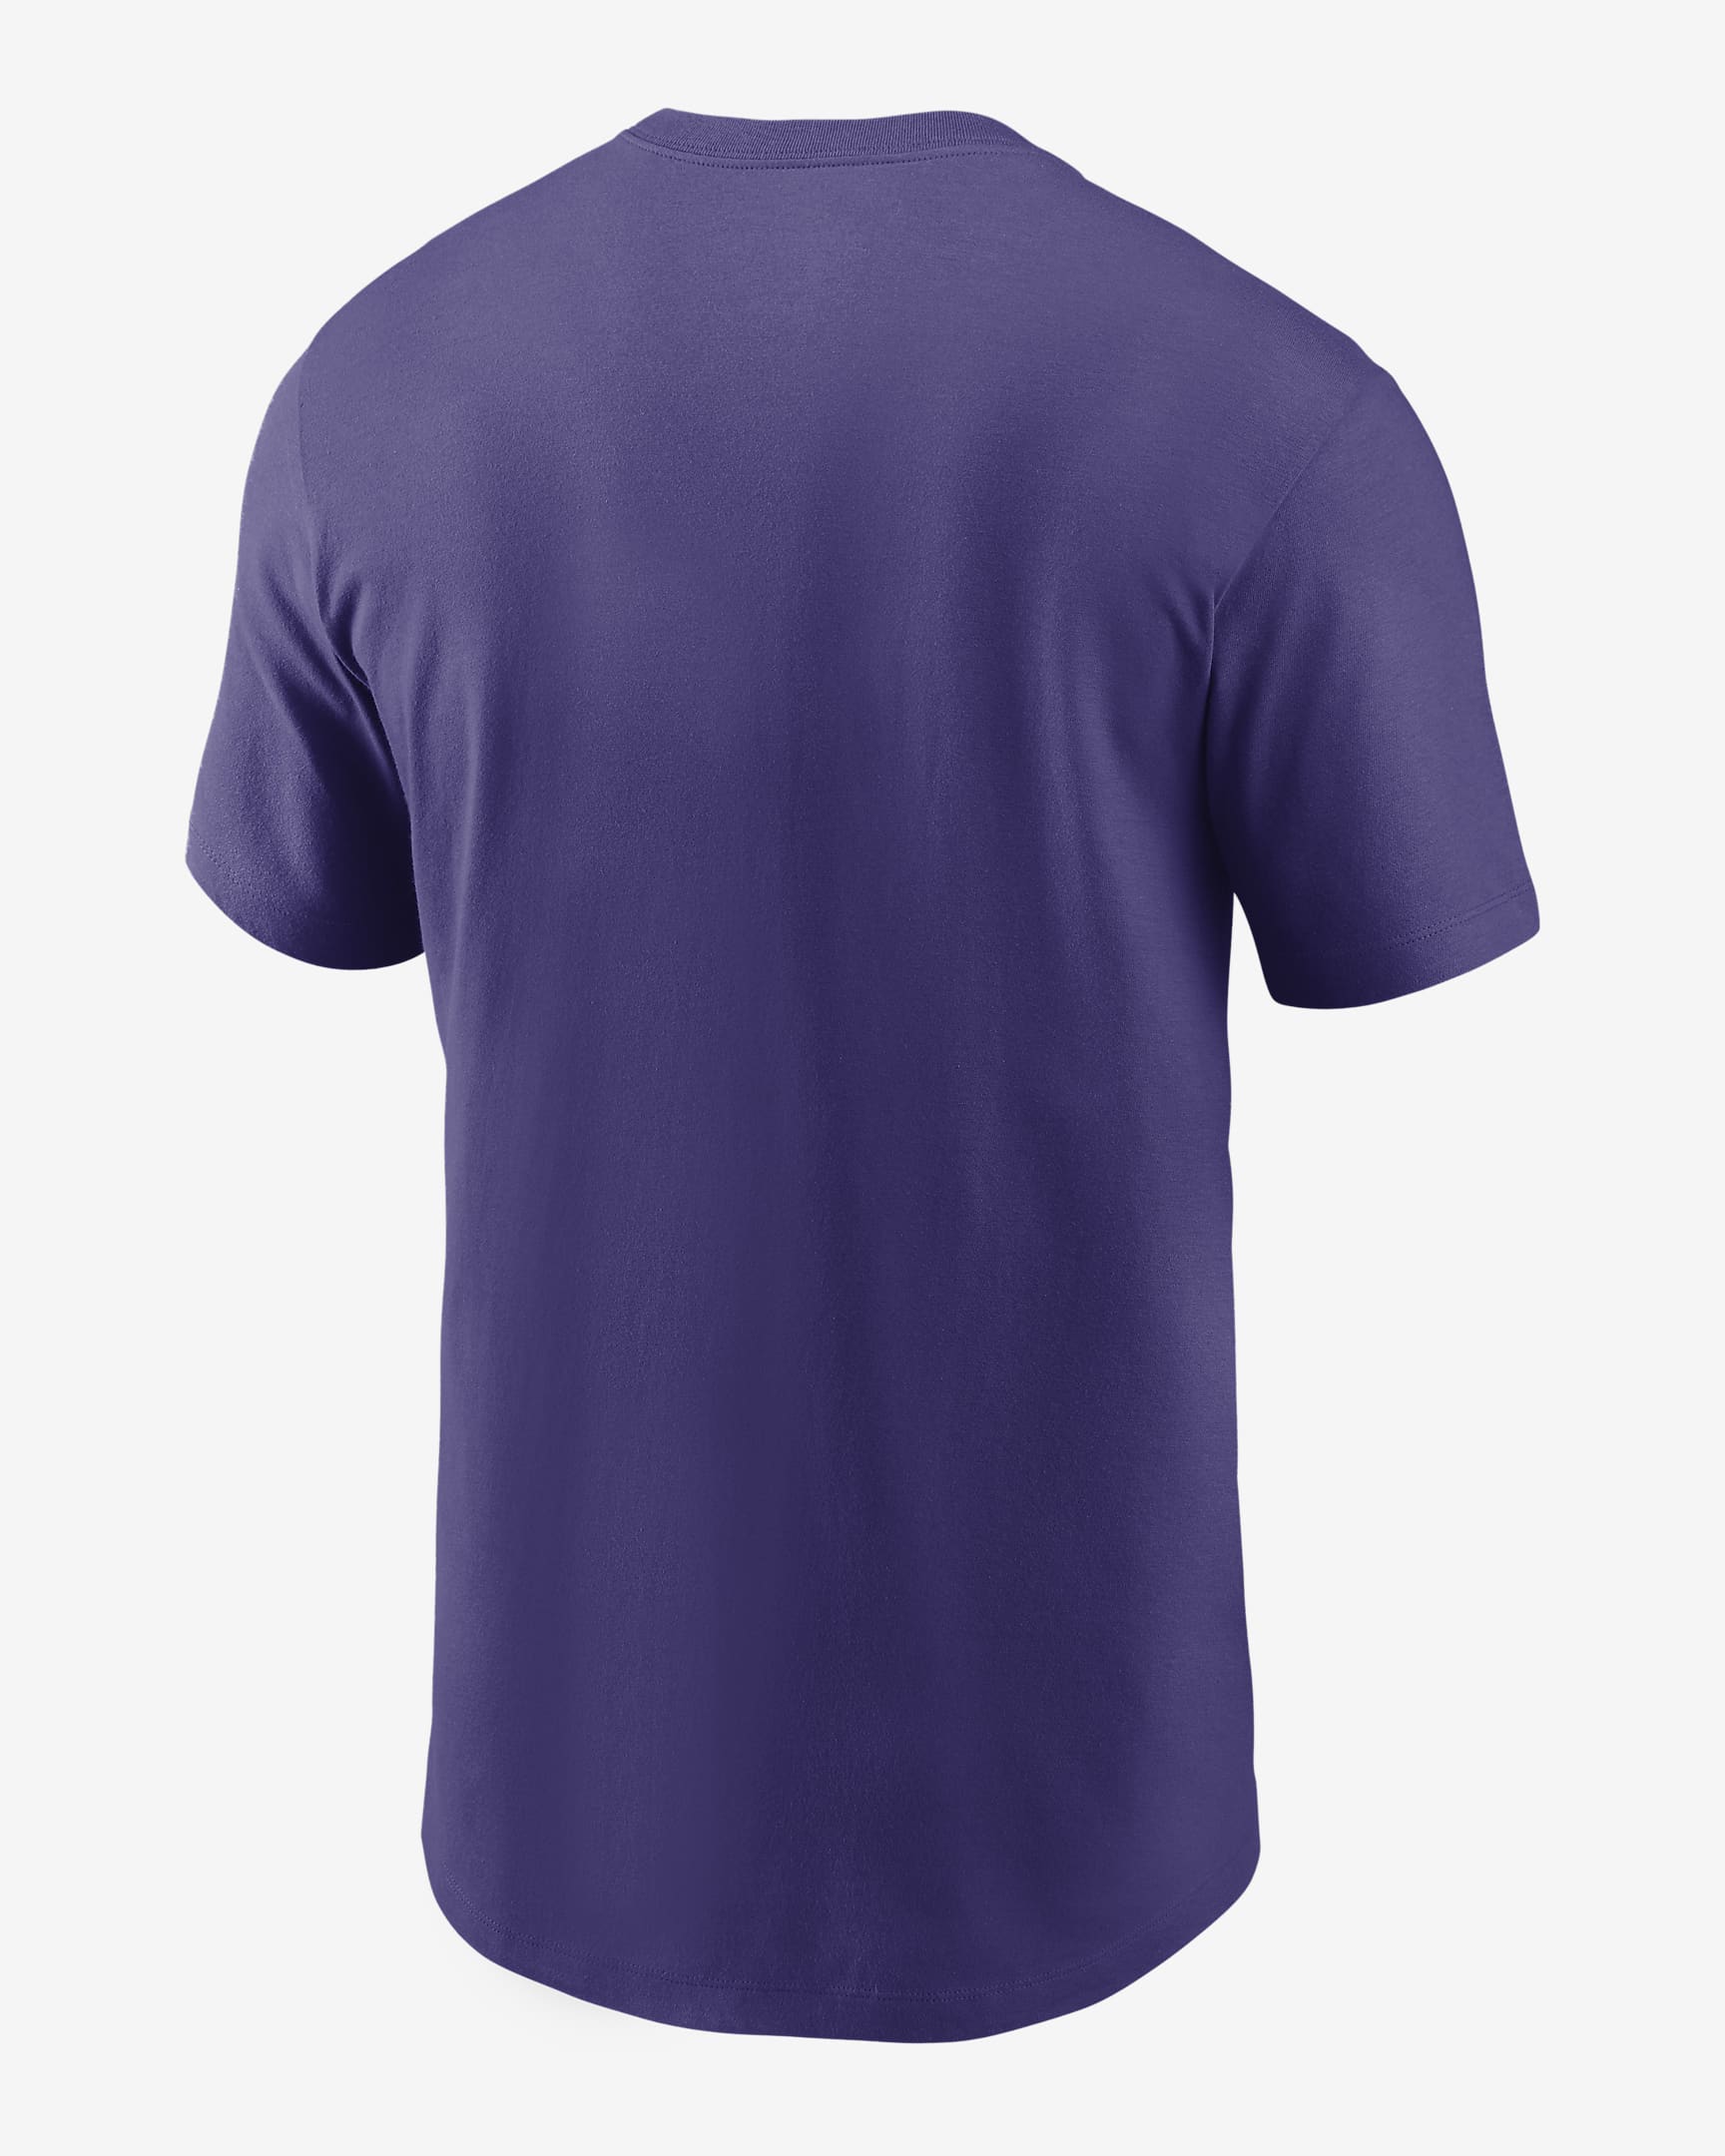 Nike (NFL Minnesota Vikings) Men's T-Shirt. Nike.com